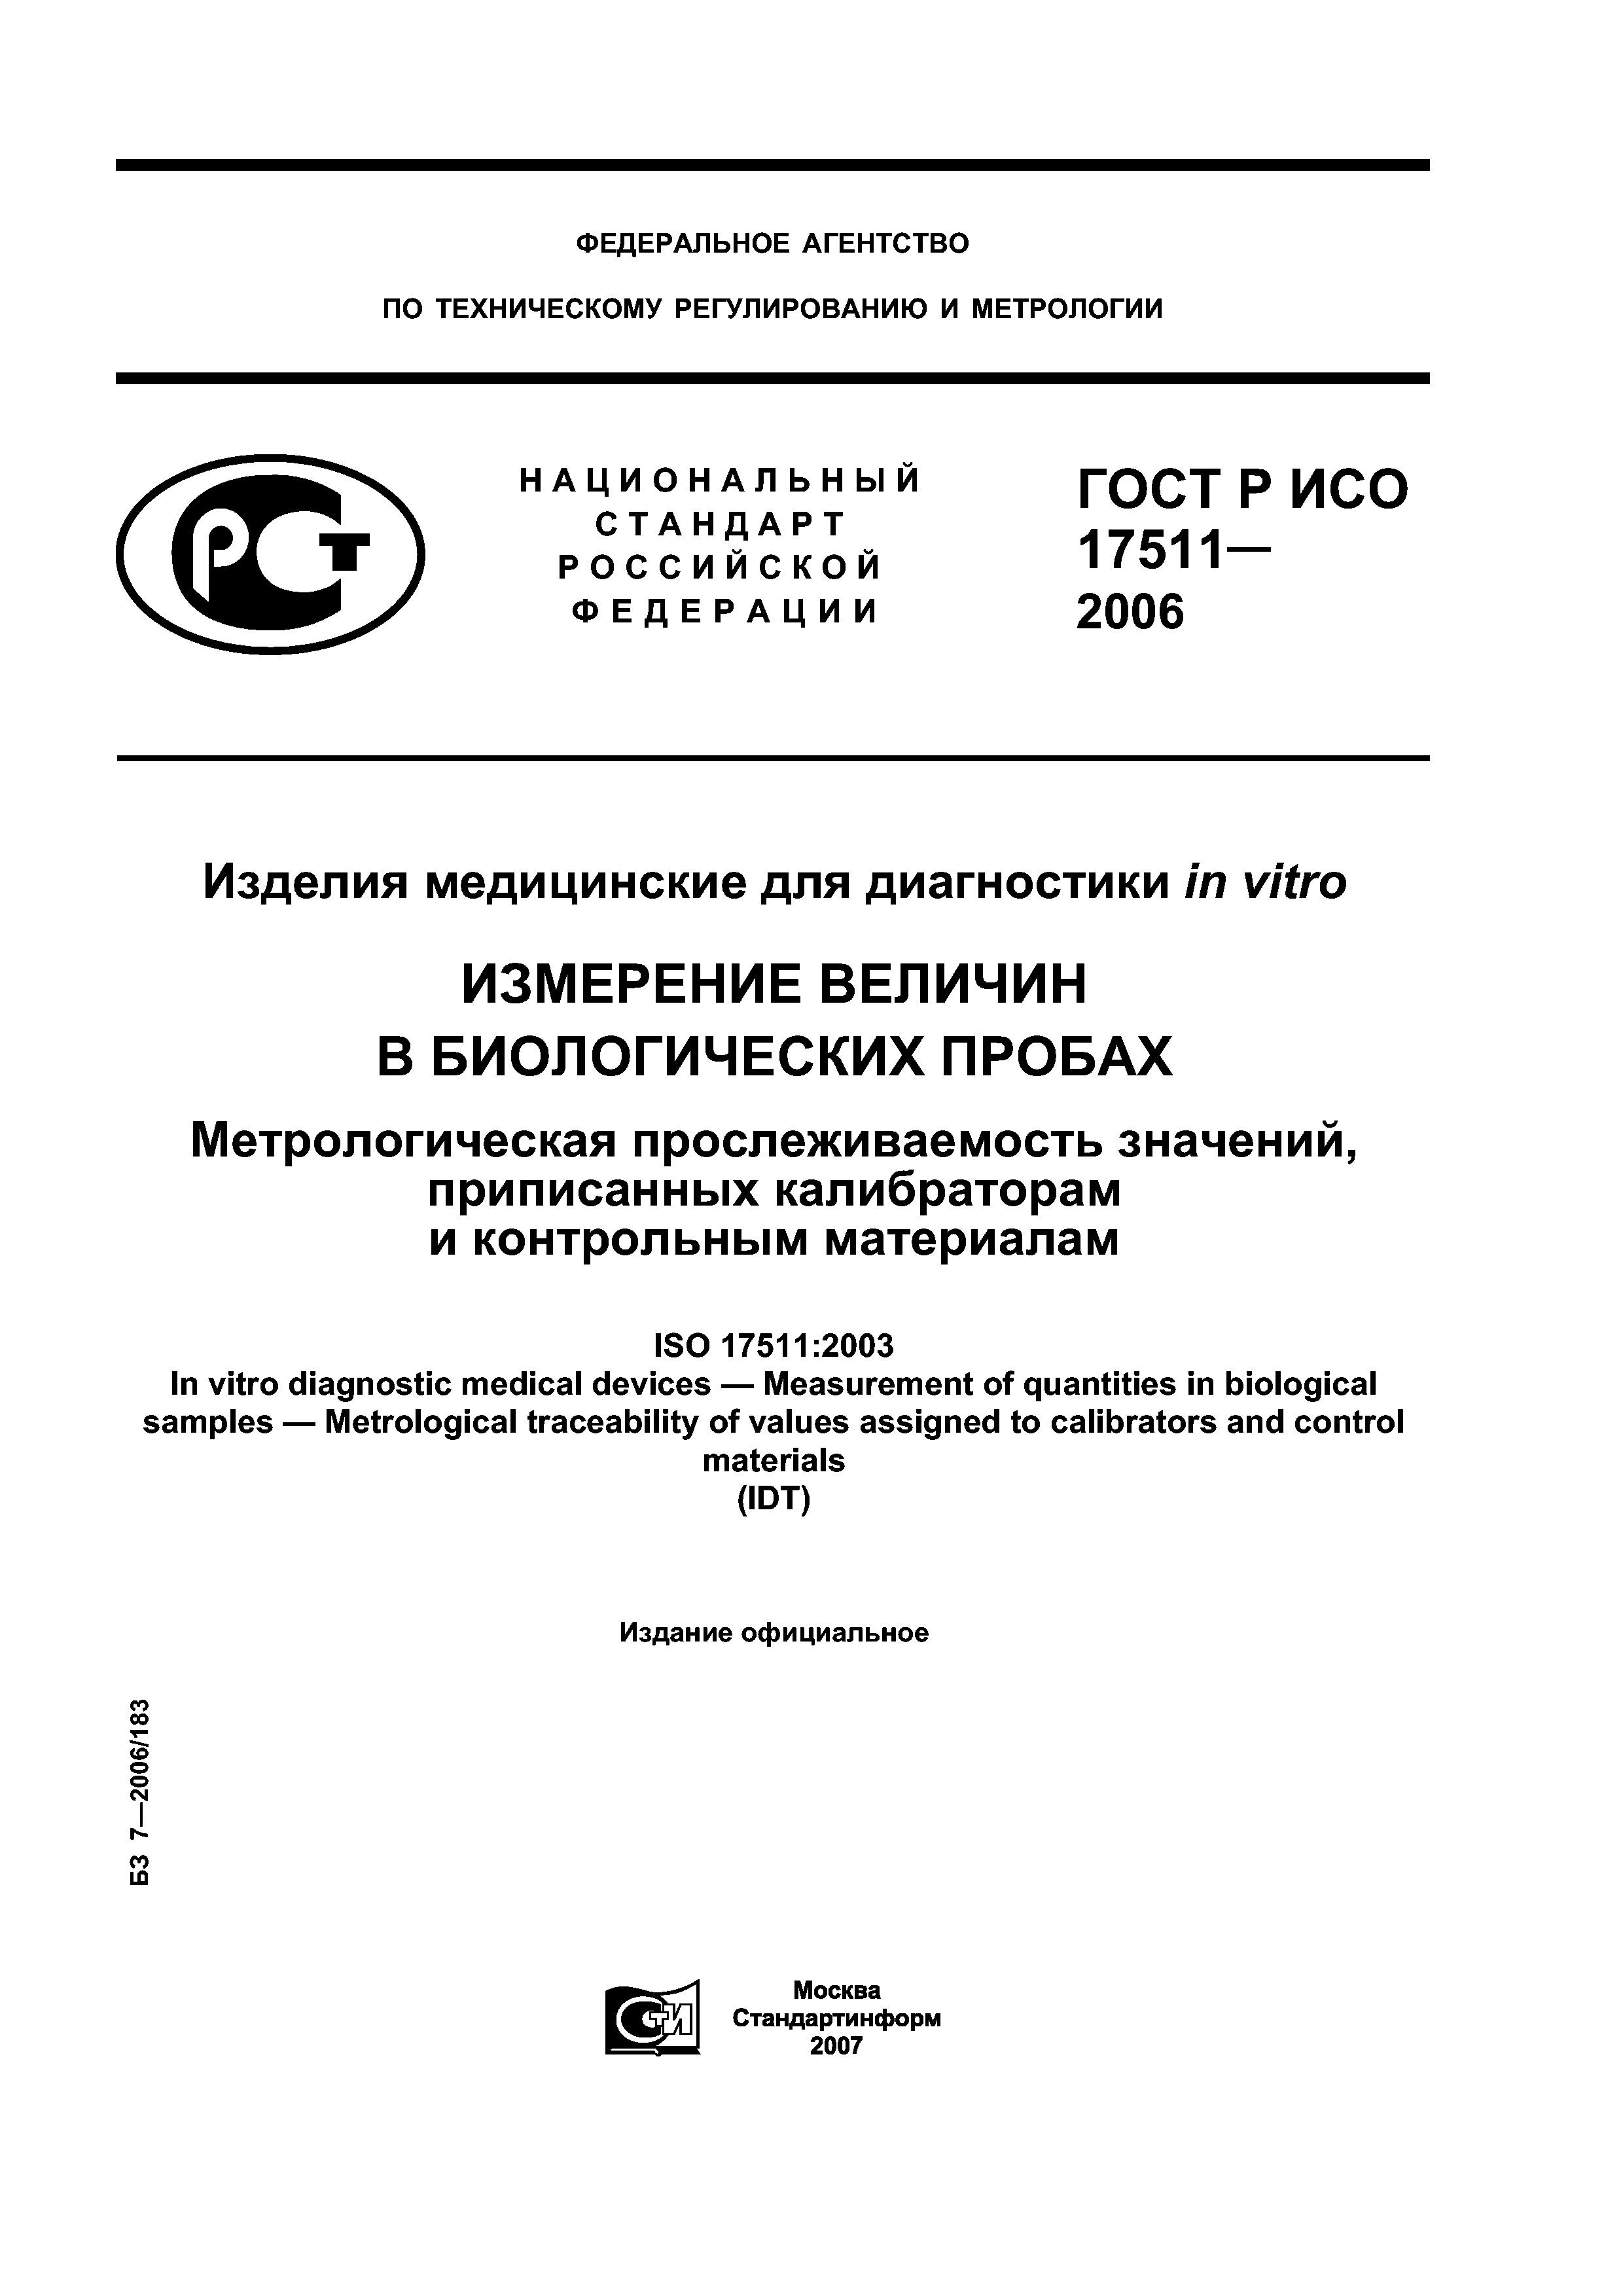 ГОСТ Р ИСО 17511-2006